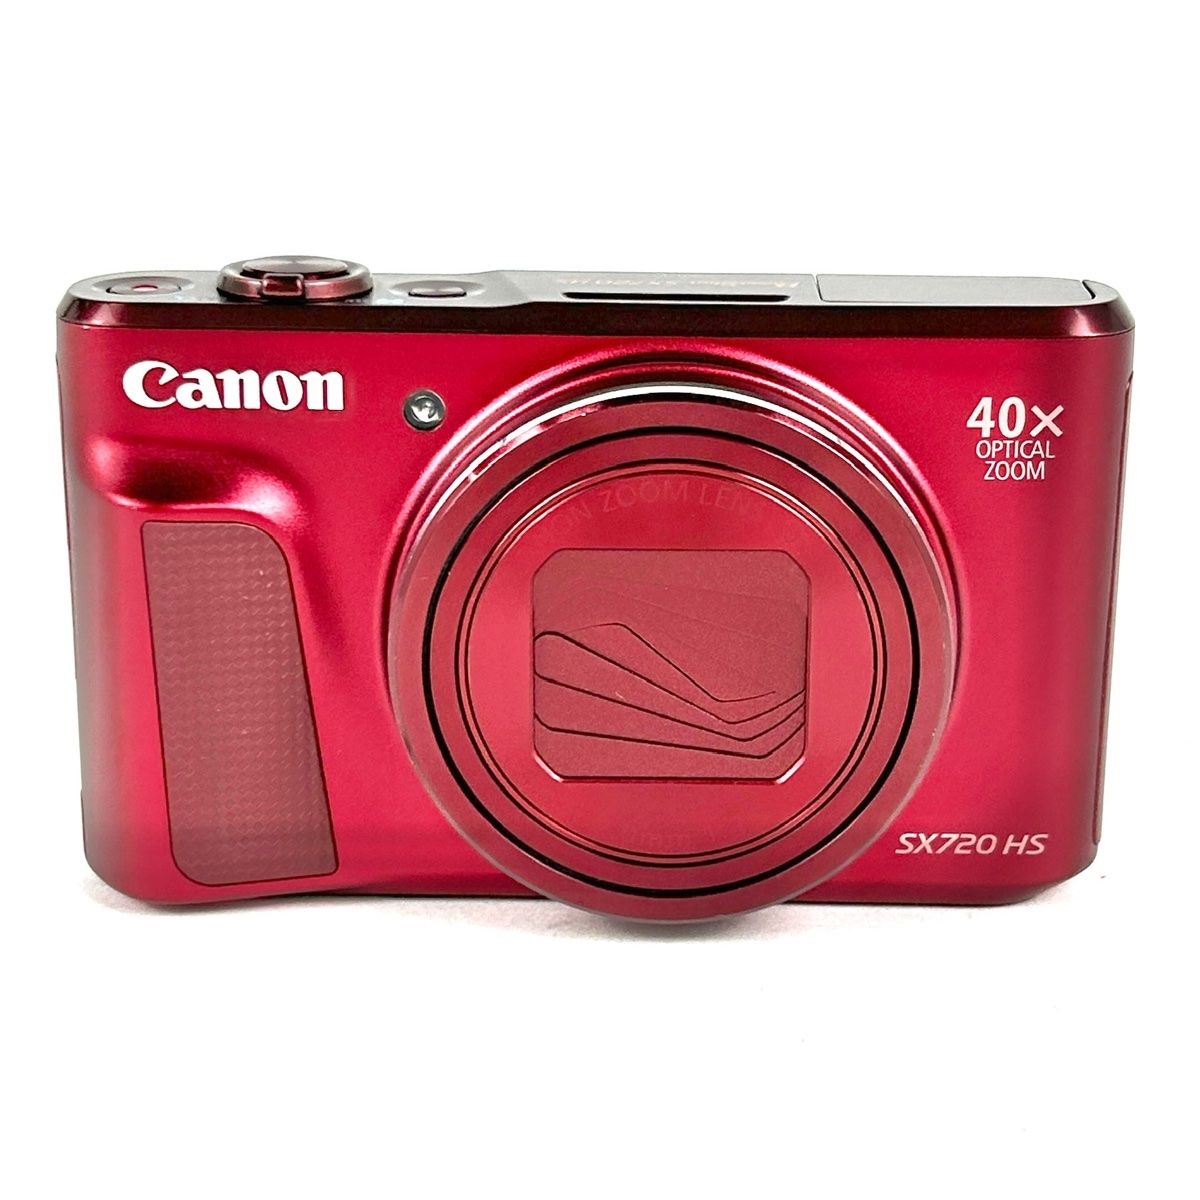 キヤノン Canon PowerShot SX720HS レッド 赤 コンパクトデジタルカメラ 【中古】